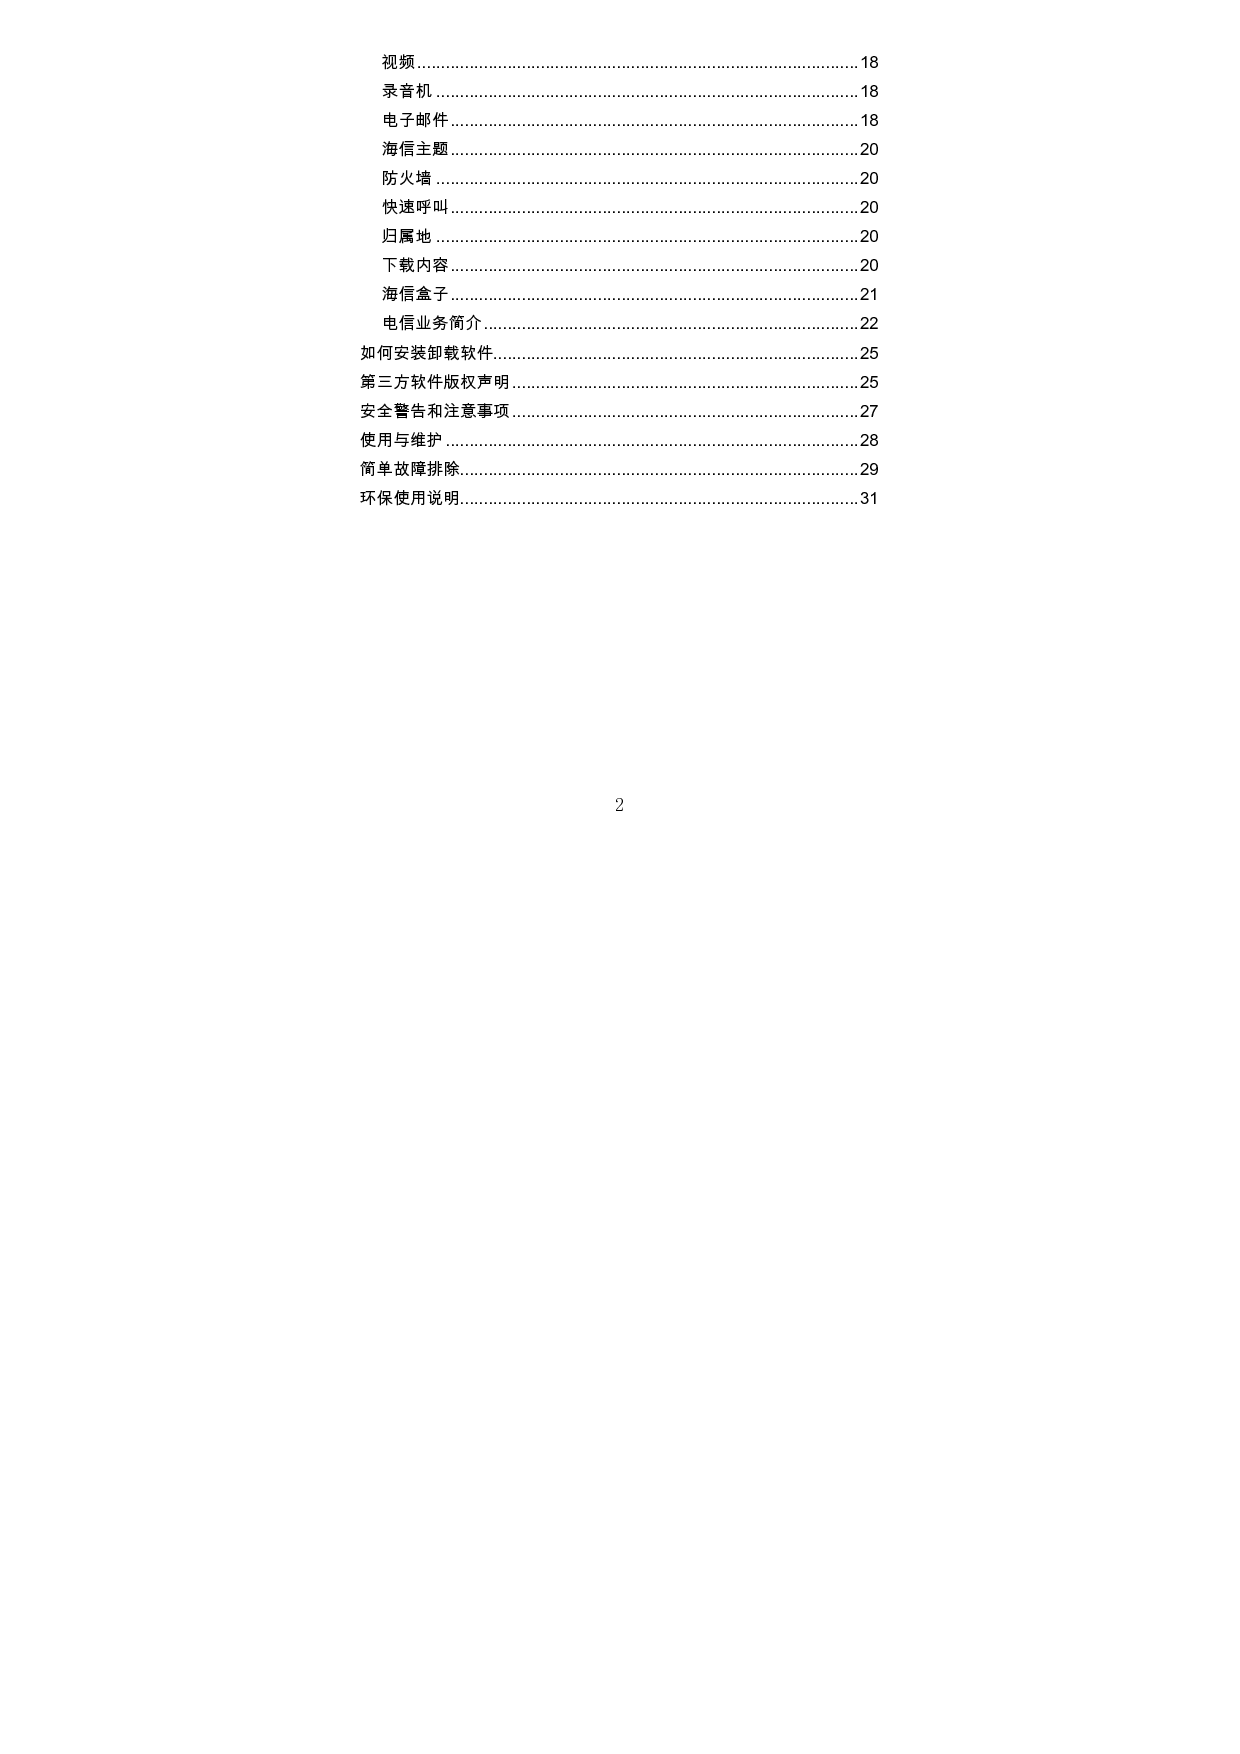 海信 Hisense HS-EG950 用户指南 第2页